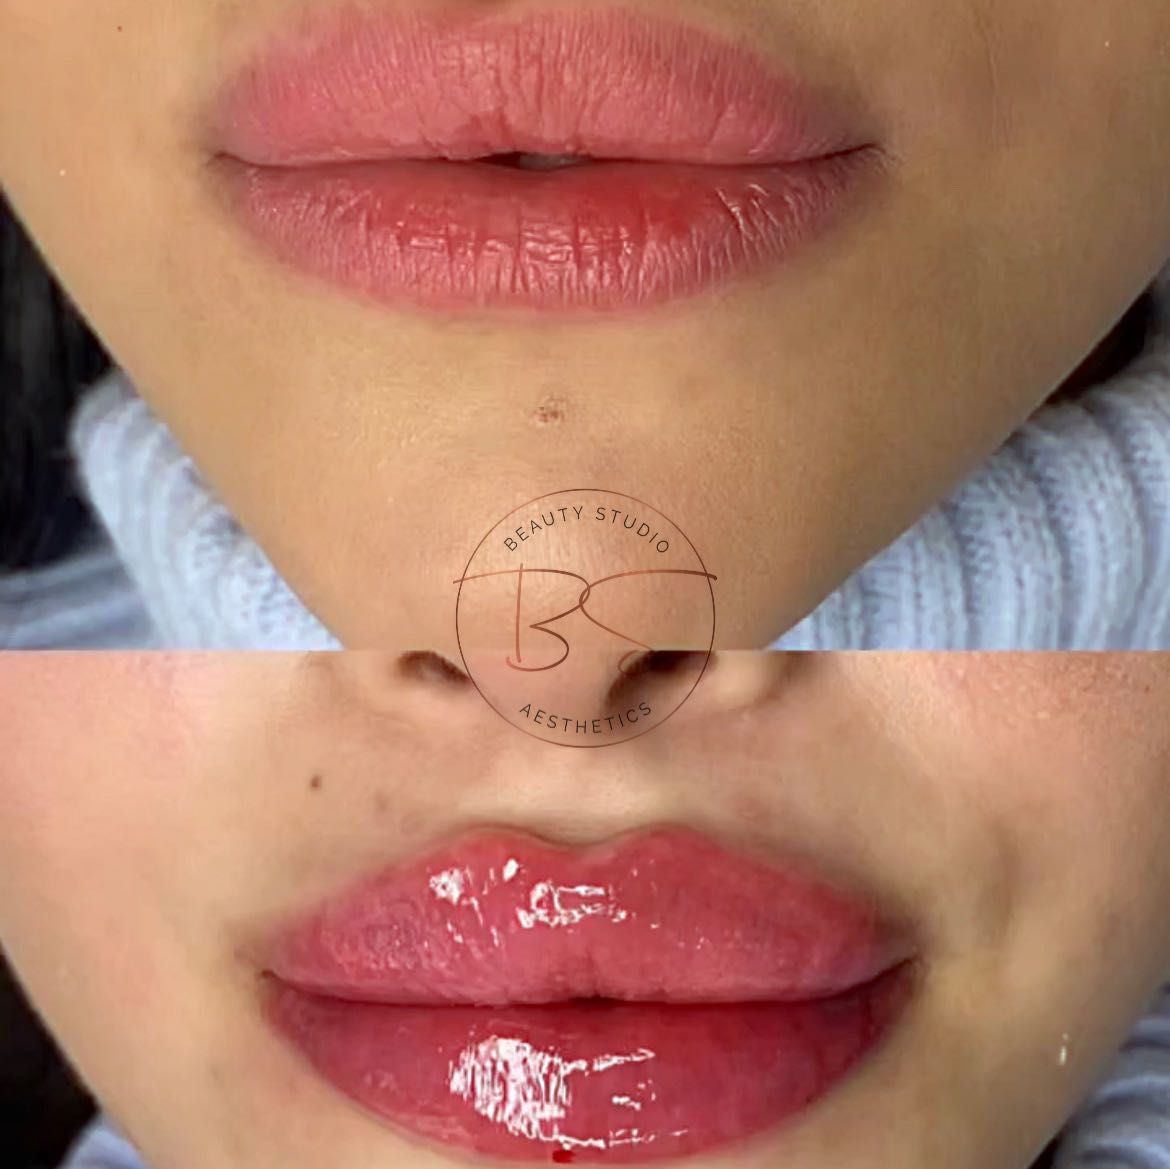 Porfolio de Lèvres / Russian Lips